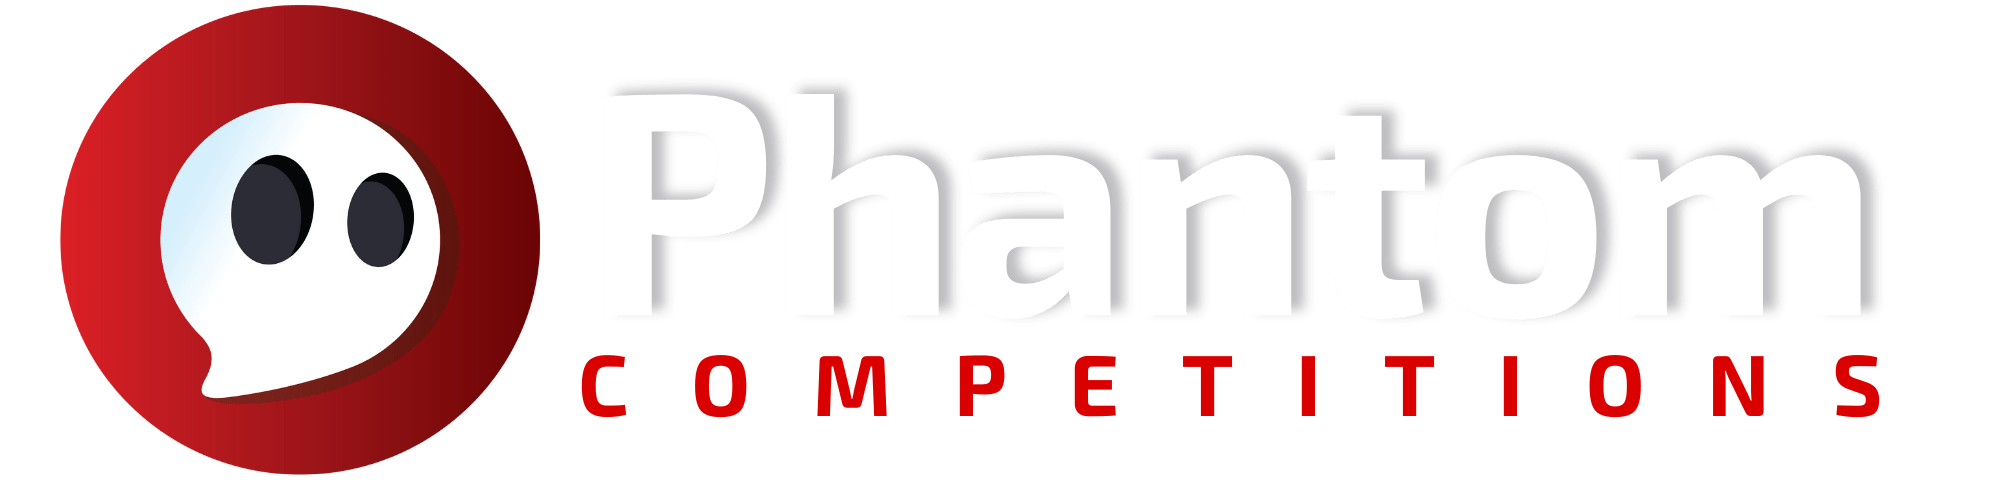 Logo Phantom Competitions